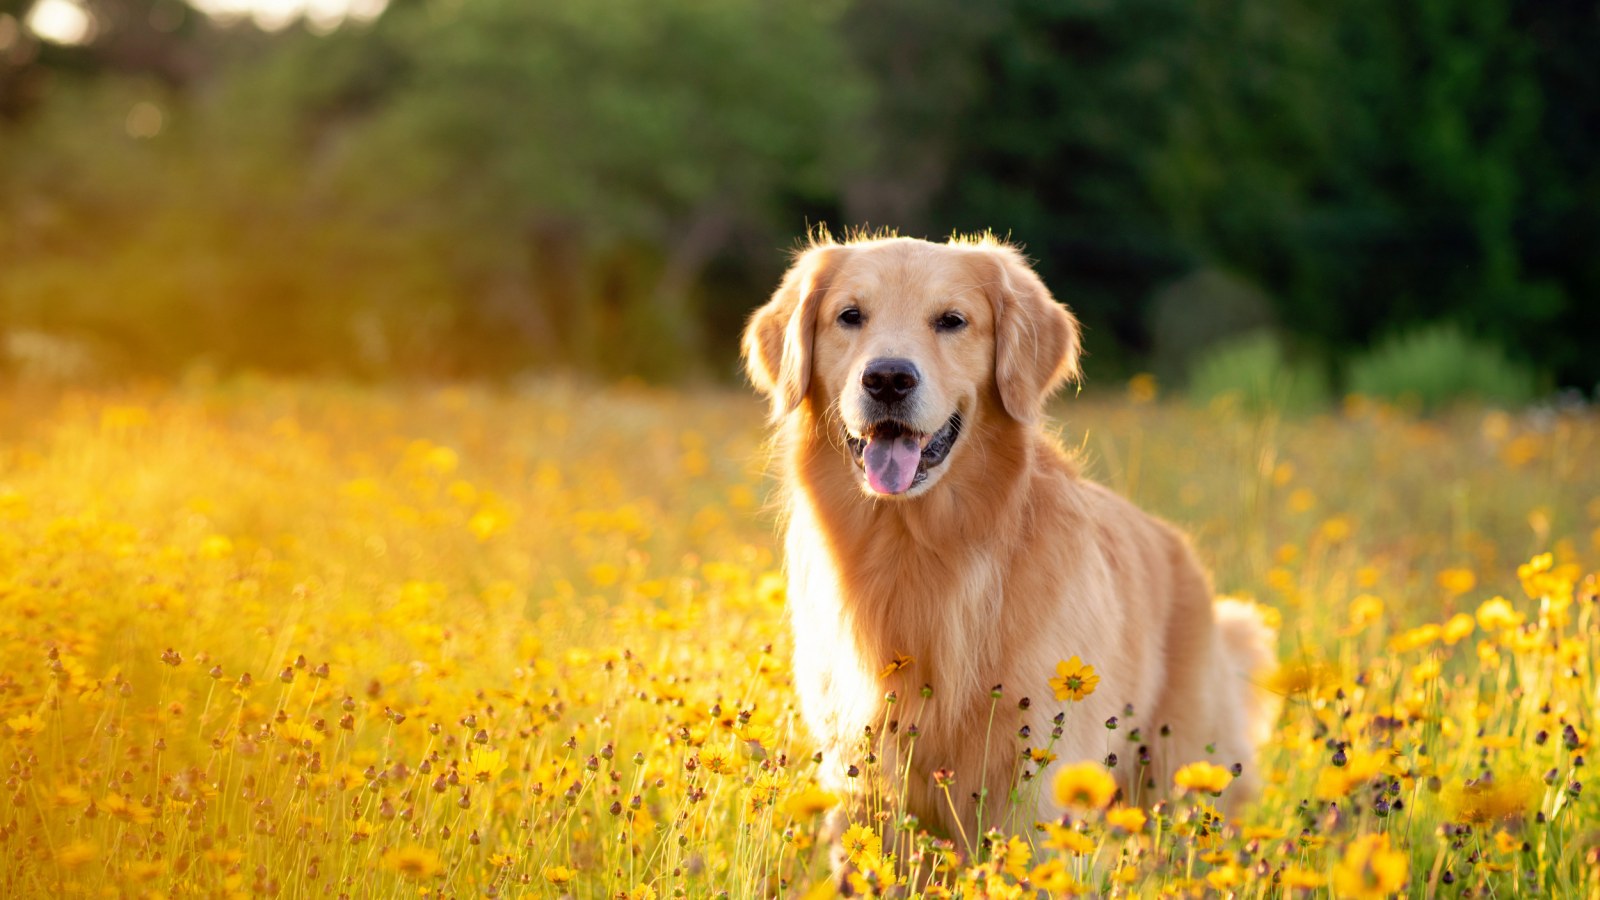 Chó Golden là một trong những giống chó được yêu thích nhất trên thế giới. Hãy ngắm nhìn những hình ảnh đáng yêu của chúng - đôi mắt tròn xoe, lông vàng óng ánh và tính cách trung thành. Bạn sẽ không thể rời mắt khỏi chúng.